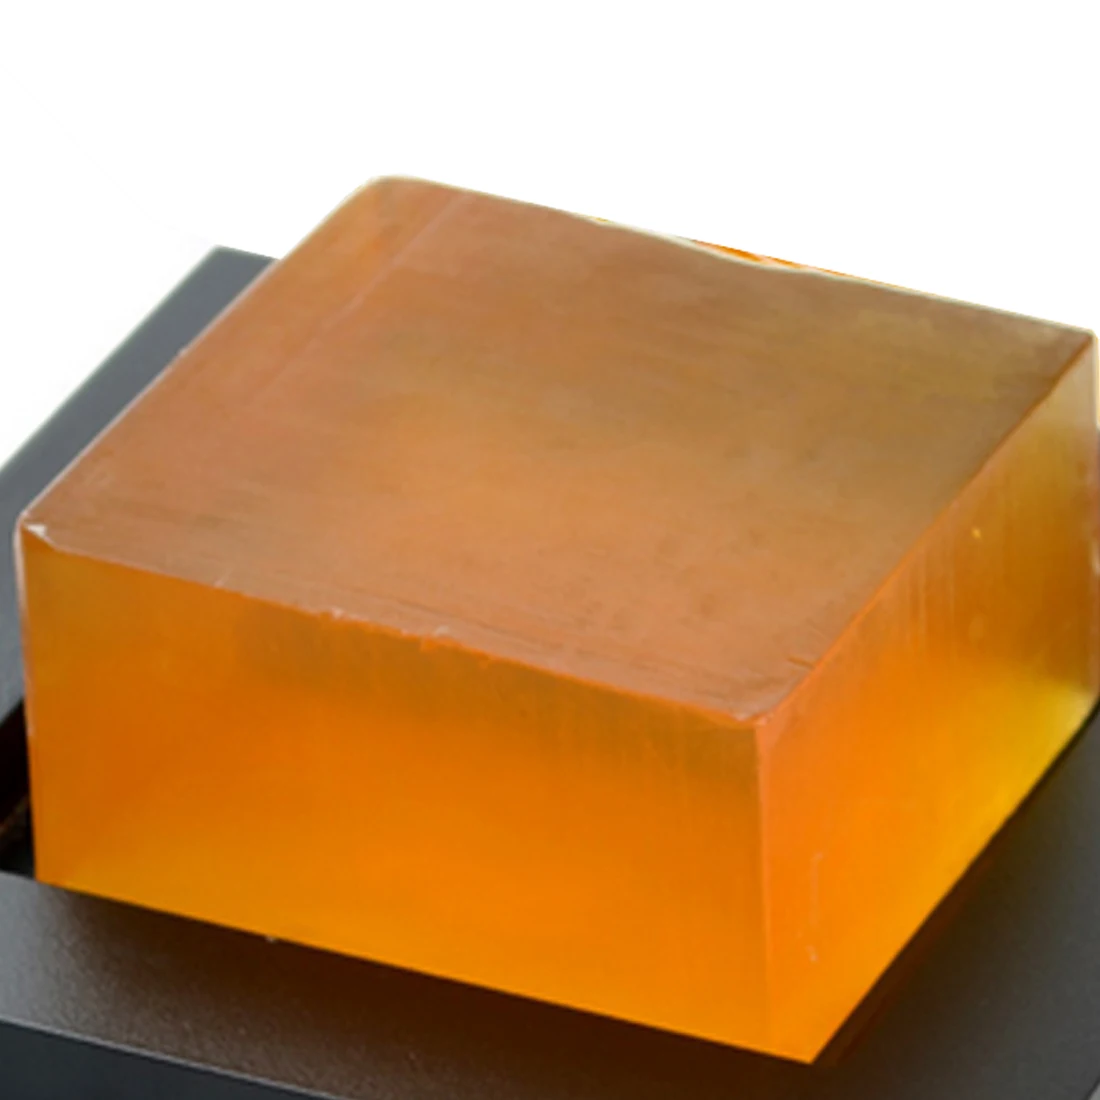 Высокое качество отбеливающий пилинг ручной работы глутатион арбутин мед мыло с койевой кислотой 100 г